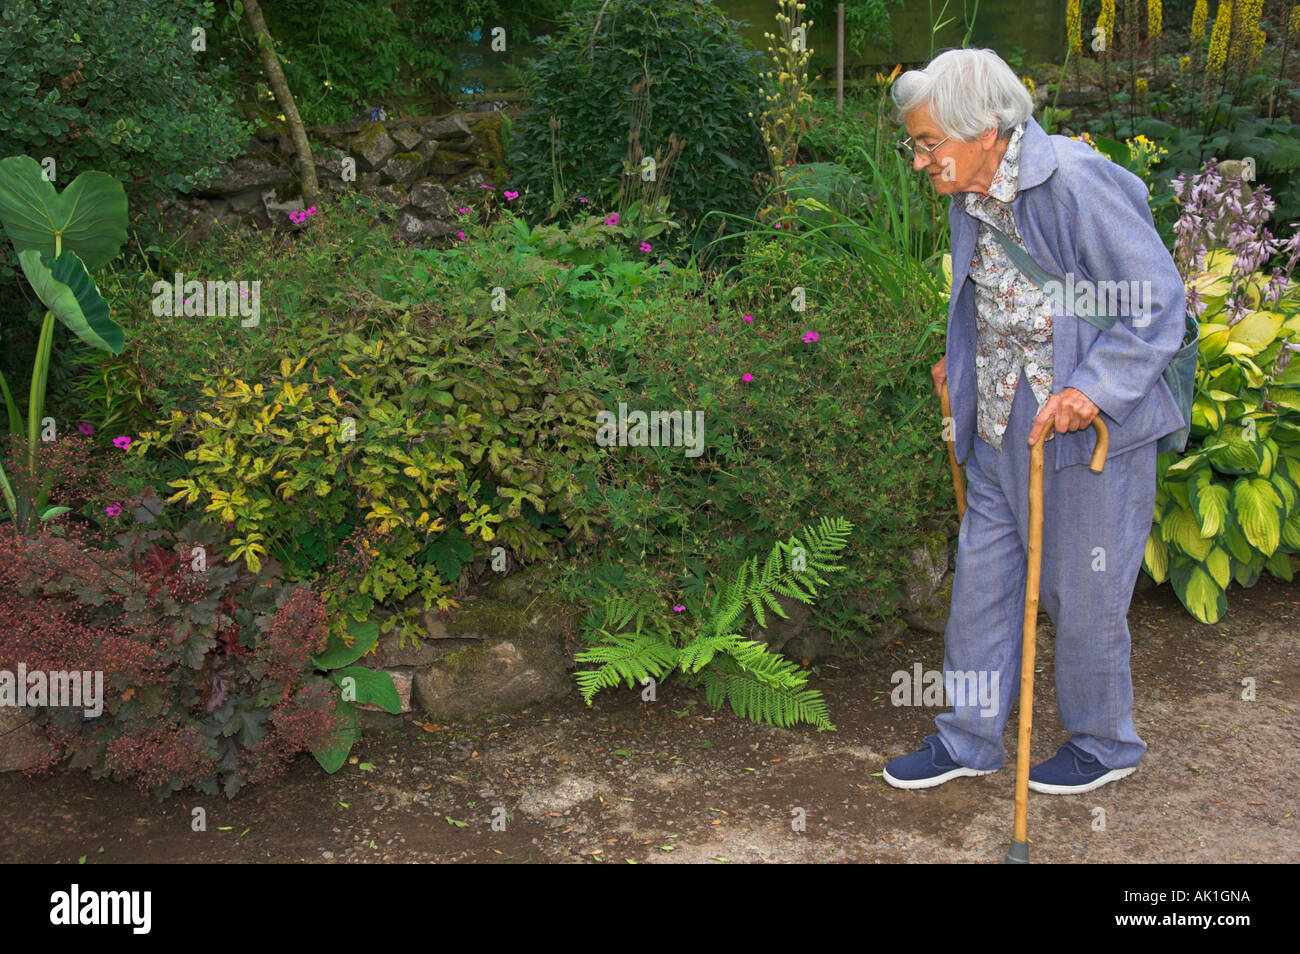 Elderly adult walking with sticks in garden Stock Photo